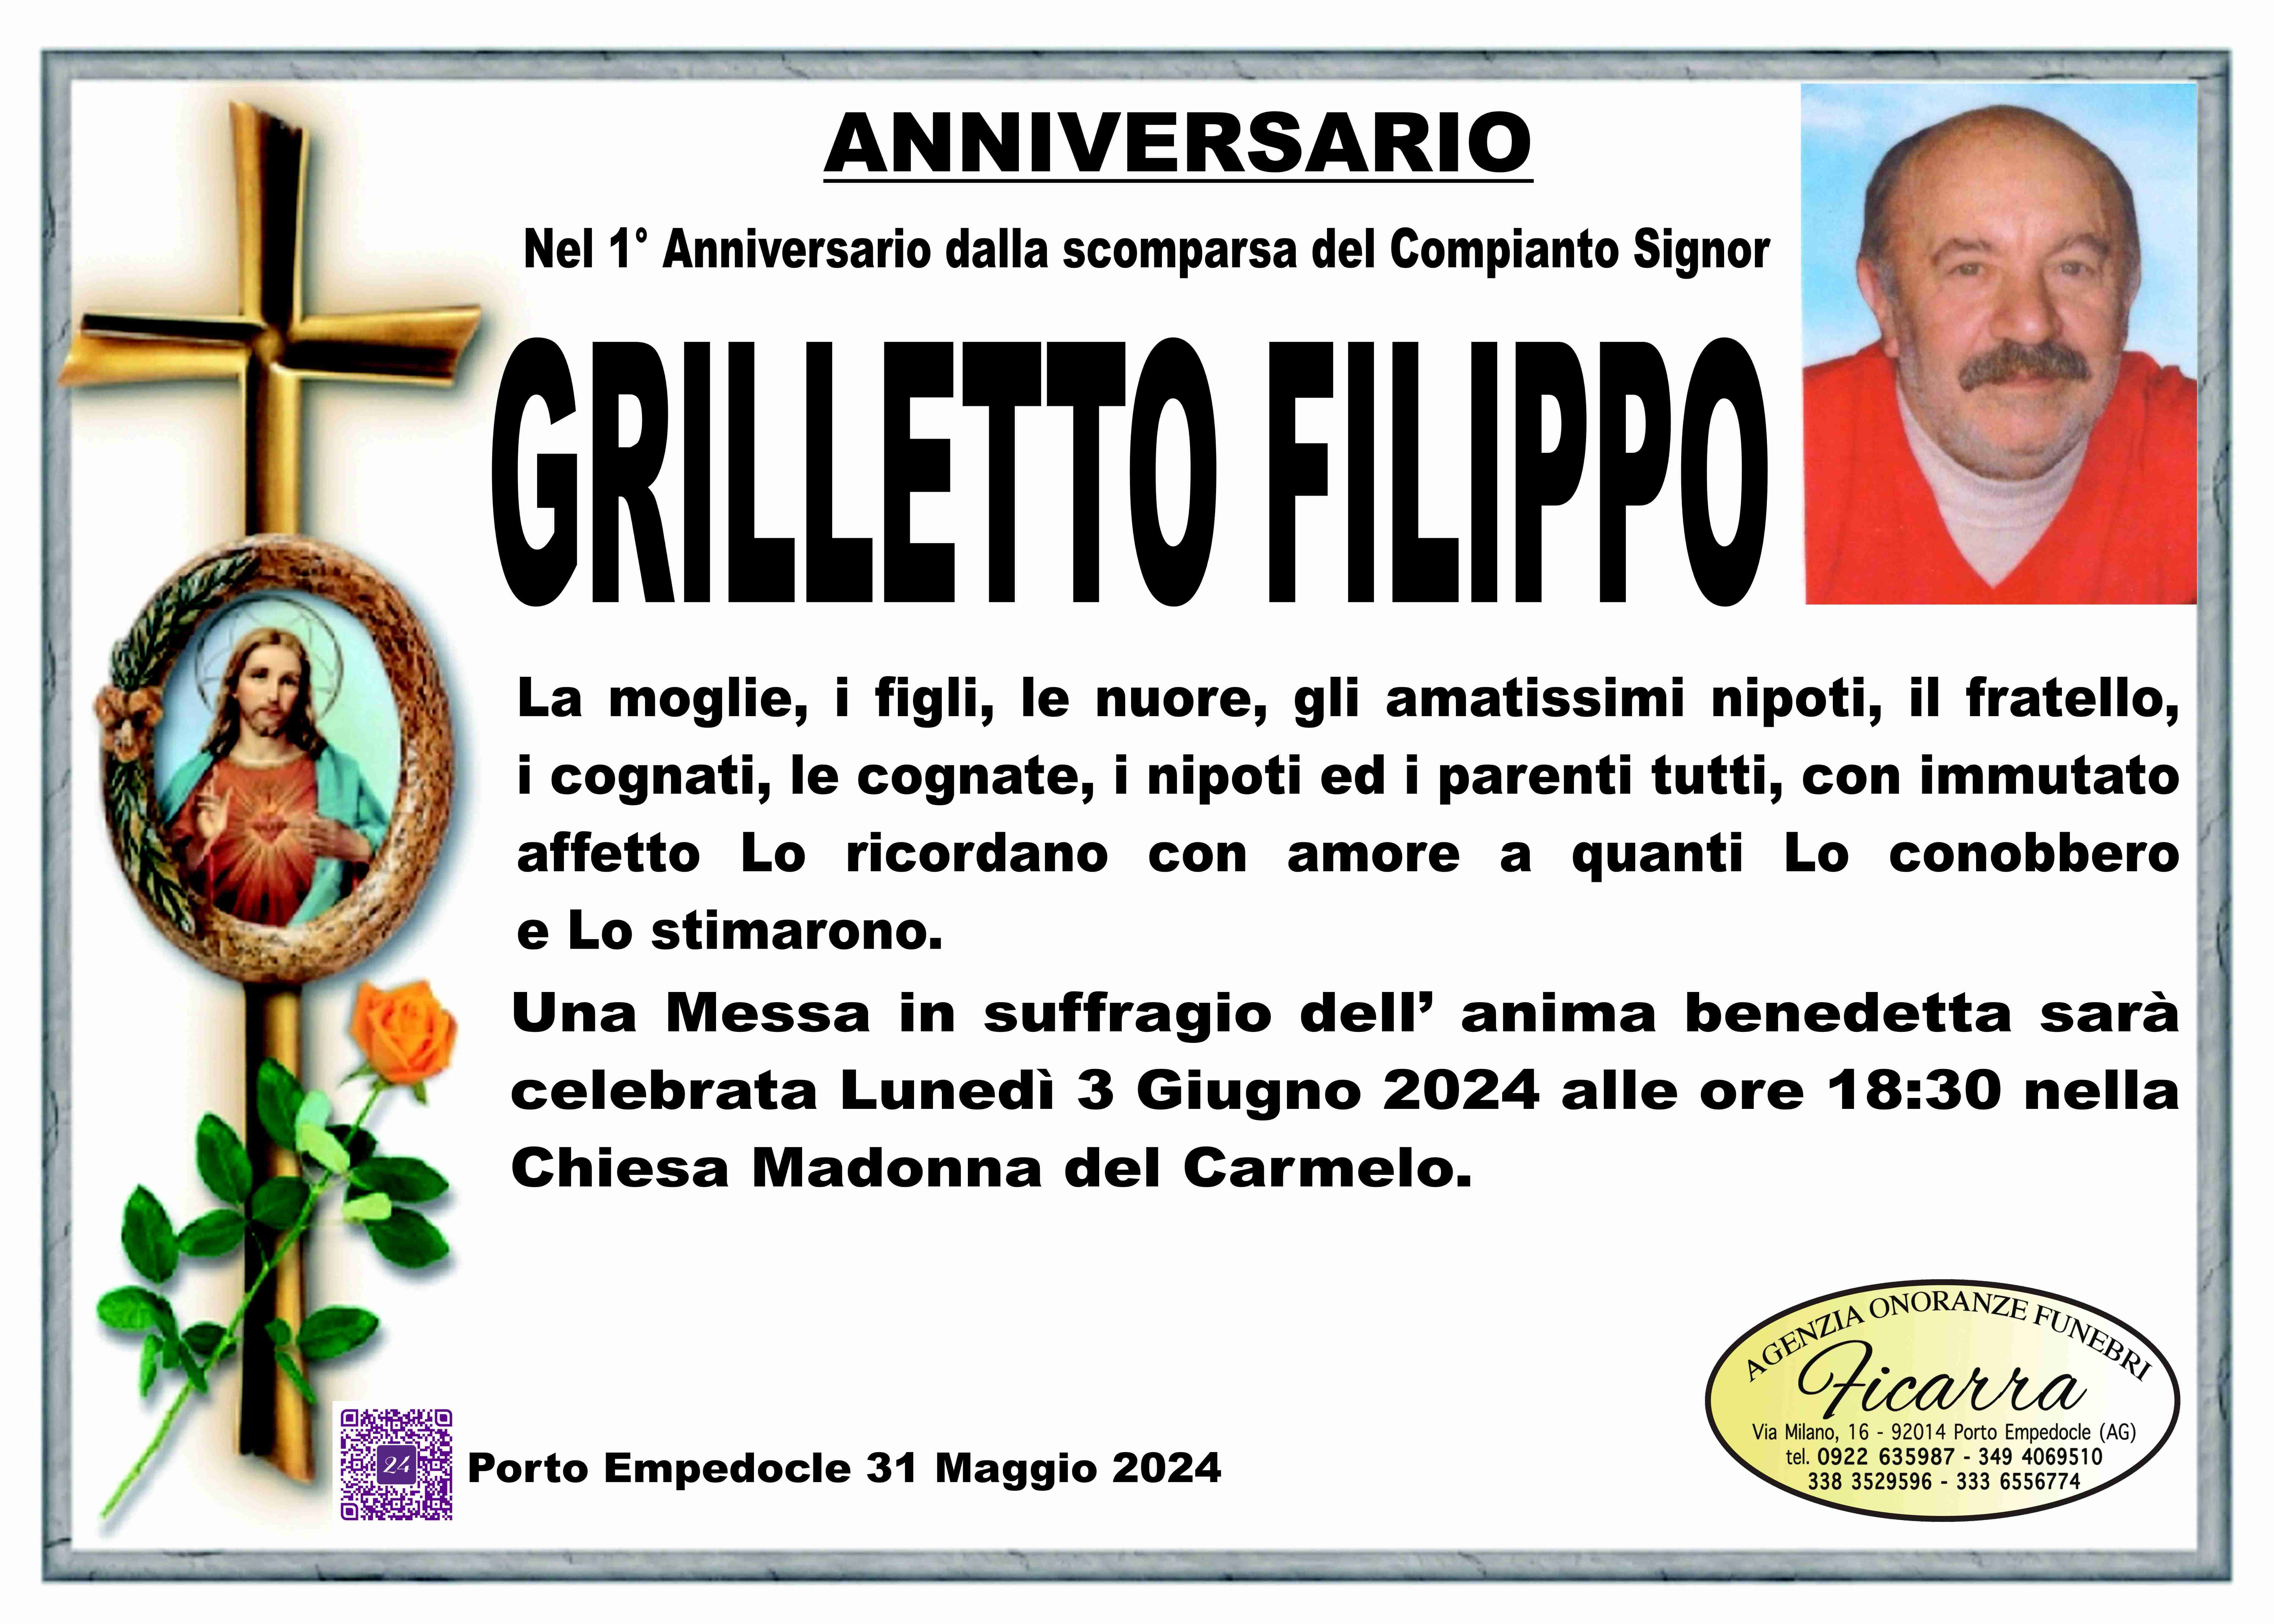 Filippo Grilletto